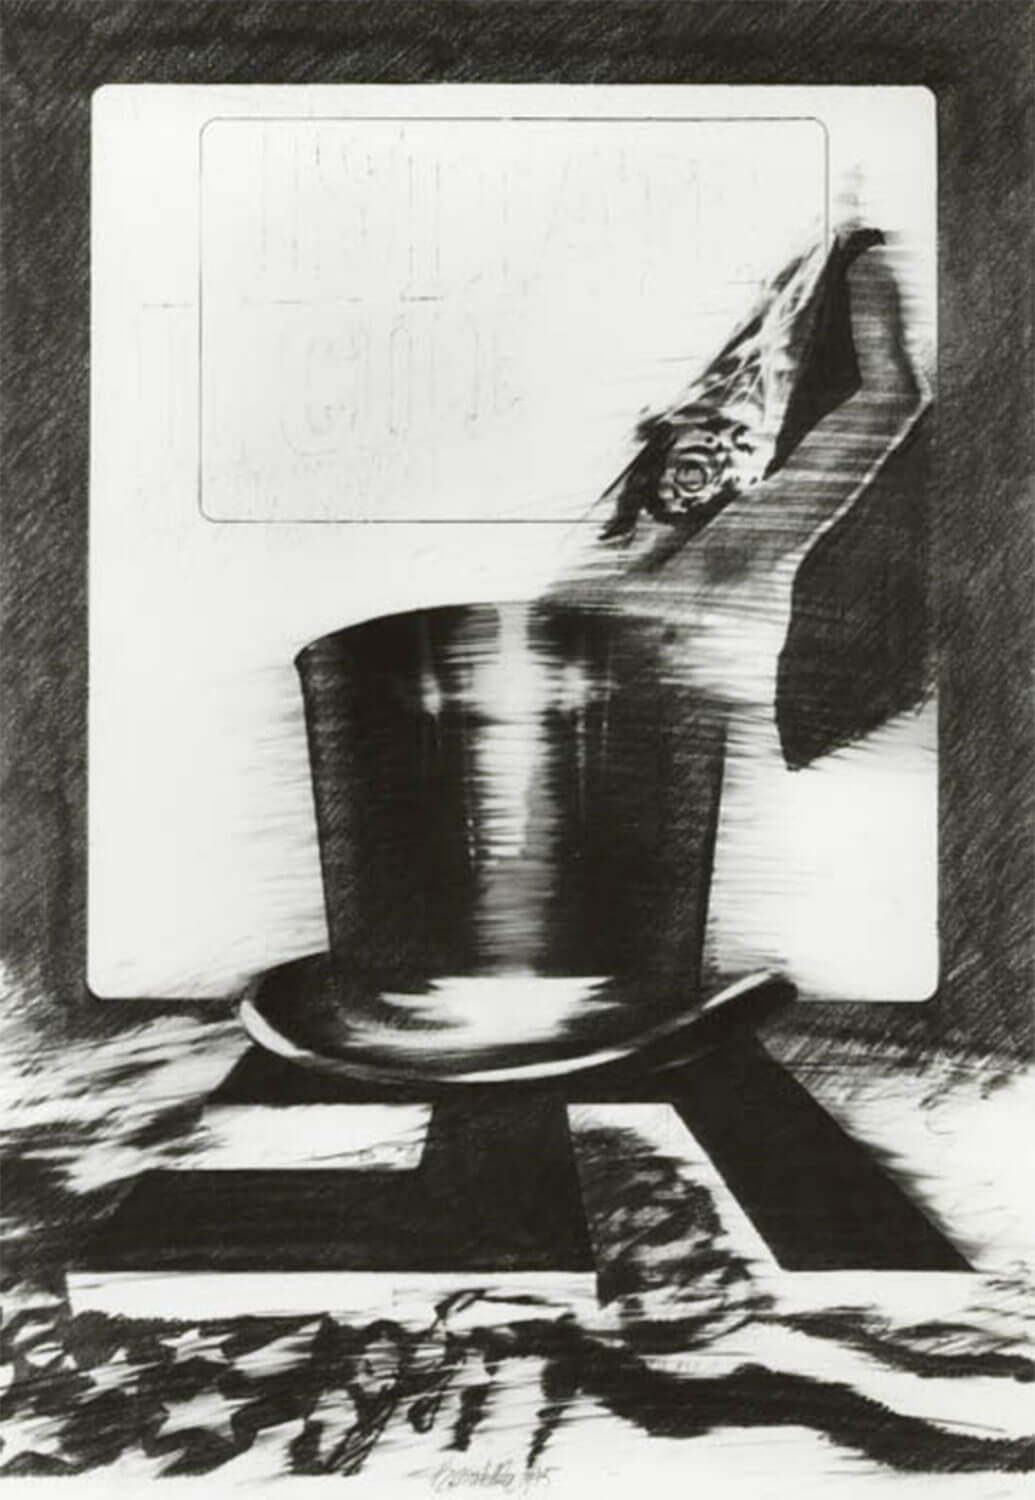 Paolo Baratella, Visitate il Cile..., 1975, Graphit auf Papier, 86 x 61 cm